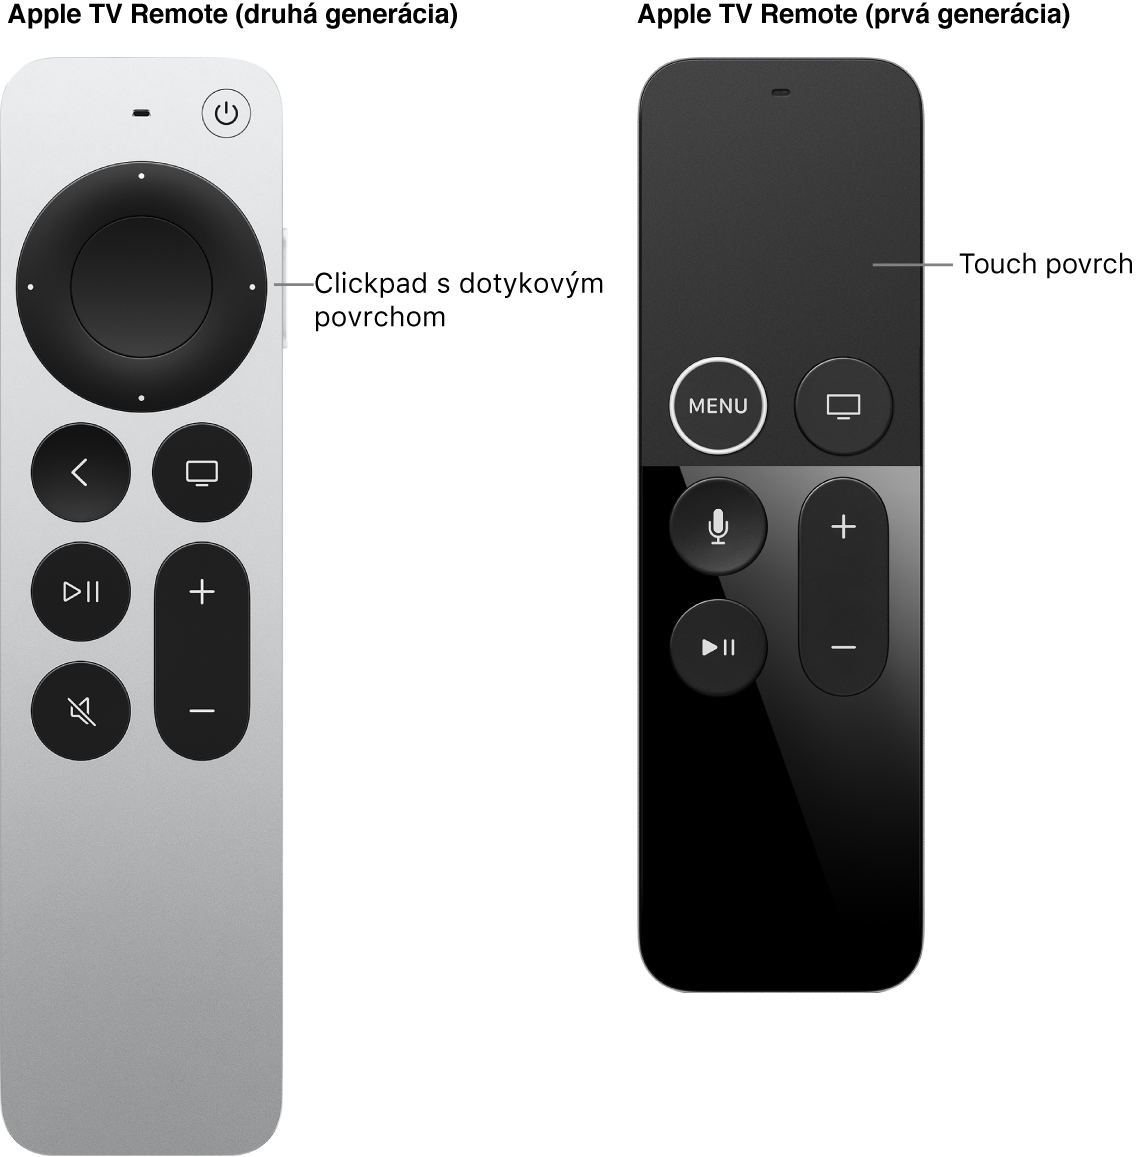 Diaľkový ovládač Apple TV (2. generácia) s clickpadom a diaľkový ovládač Apple TV (1. generácia) s dotykovým povrchom